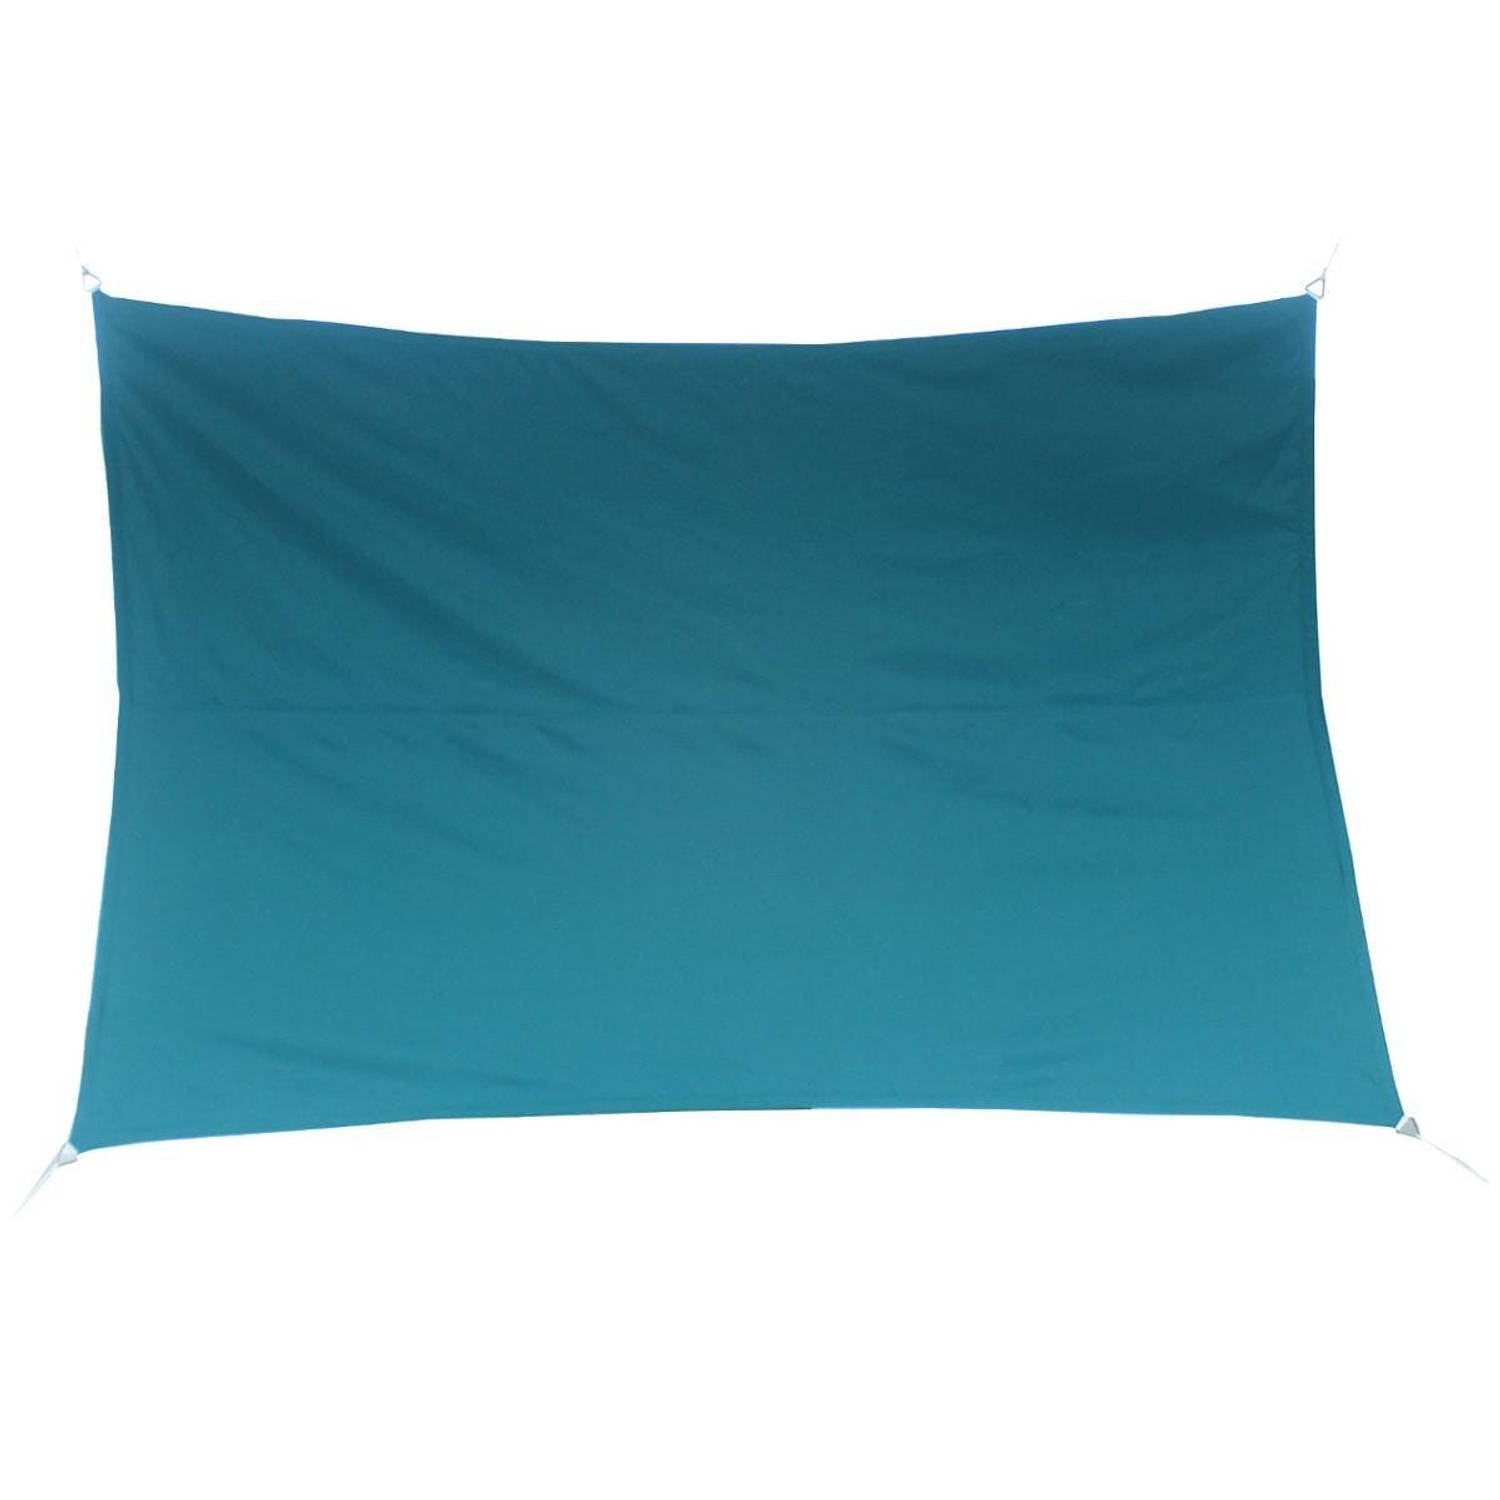 Premium kwaliteit schaduwdoek/zonnescherm Shae rechthoekig blauw 2 x 3 meter - Schaduwdoeken